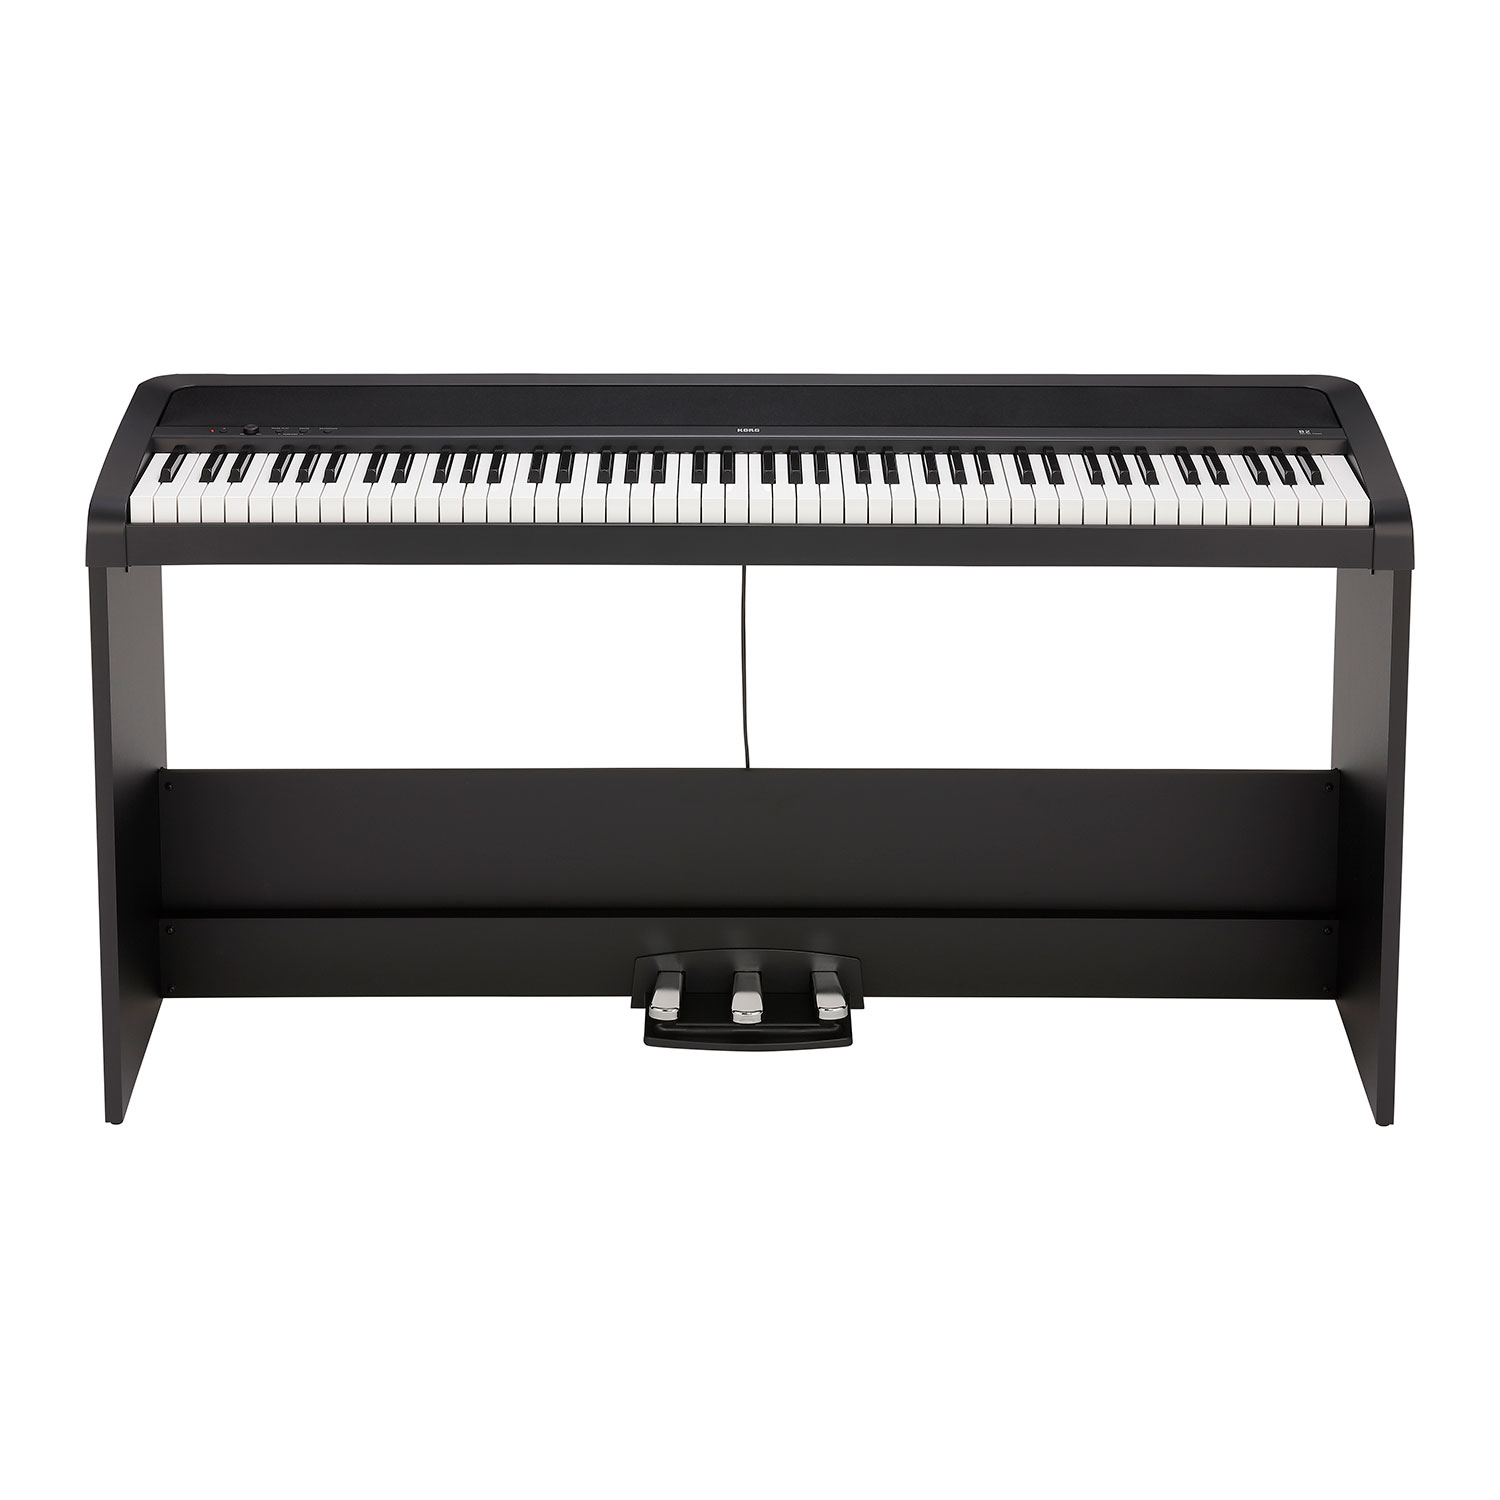 Korg B2SP Digital Piano Package - Black LN113194 - B2SP-BK | SCAN UK